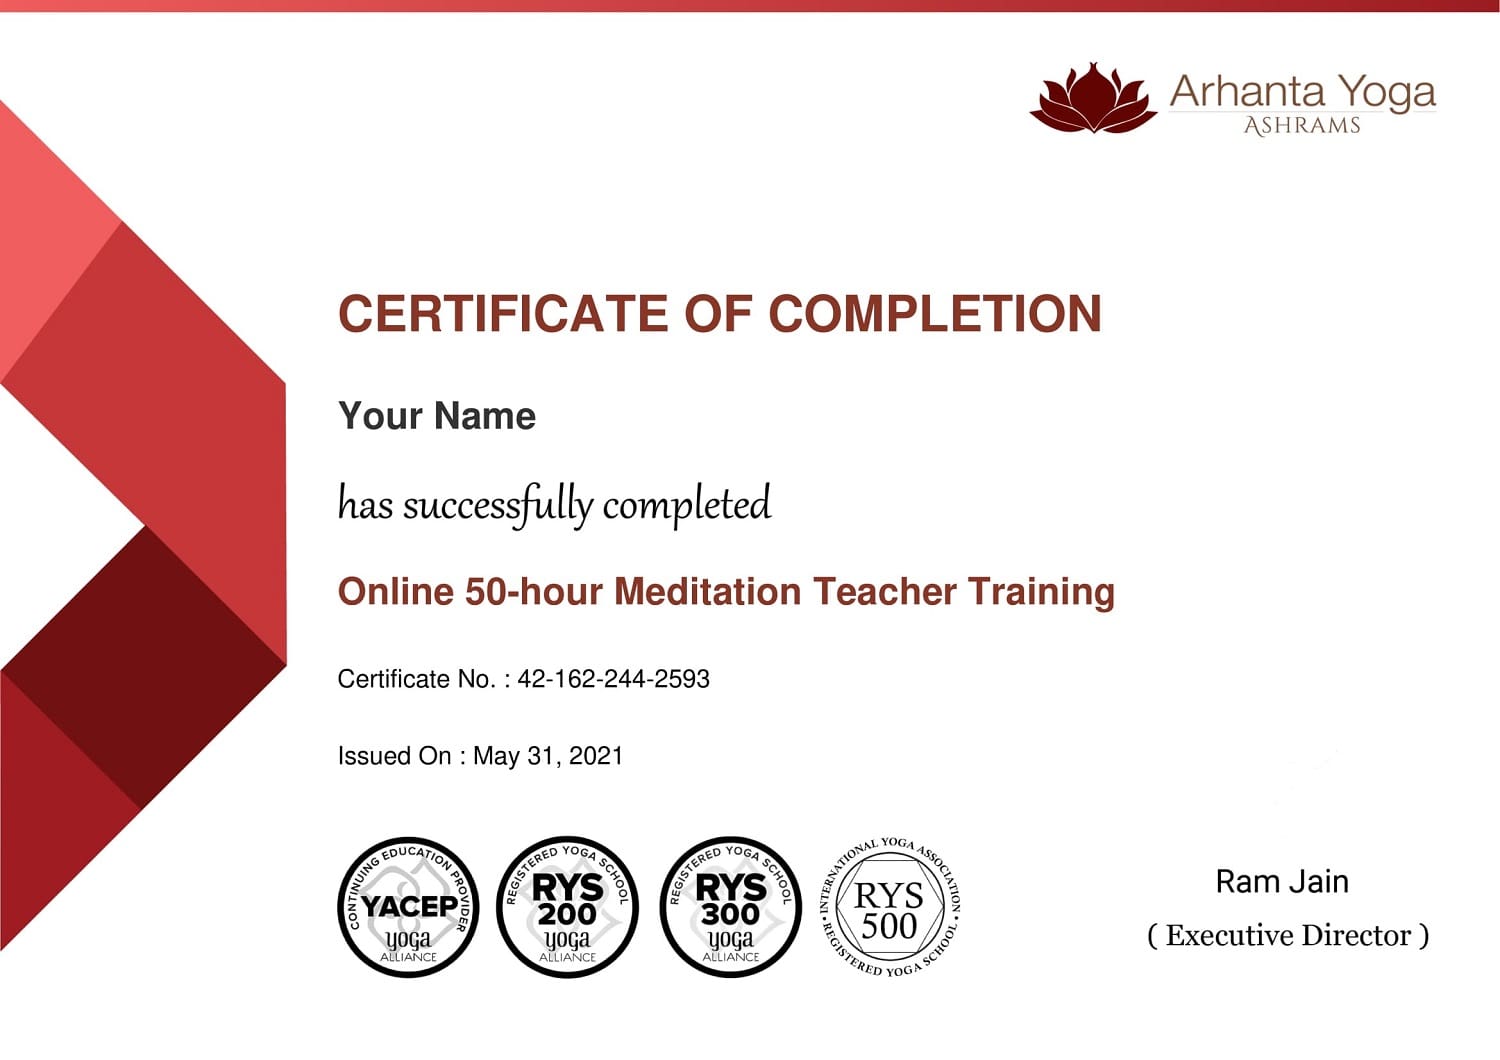 Certificat de formation de professeur de méditation en ligne